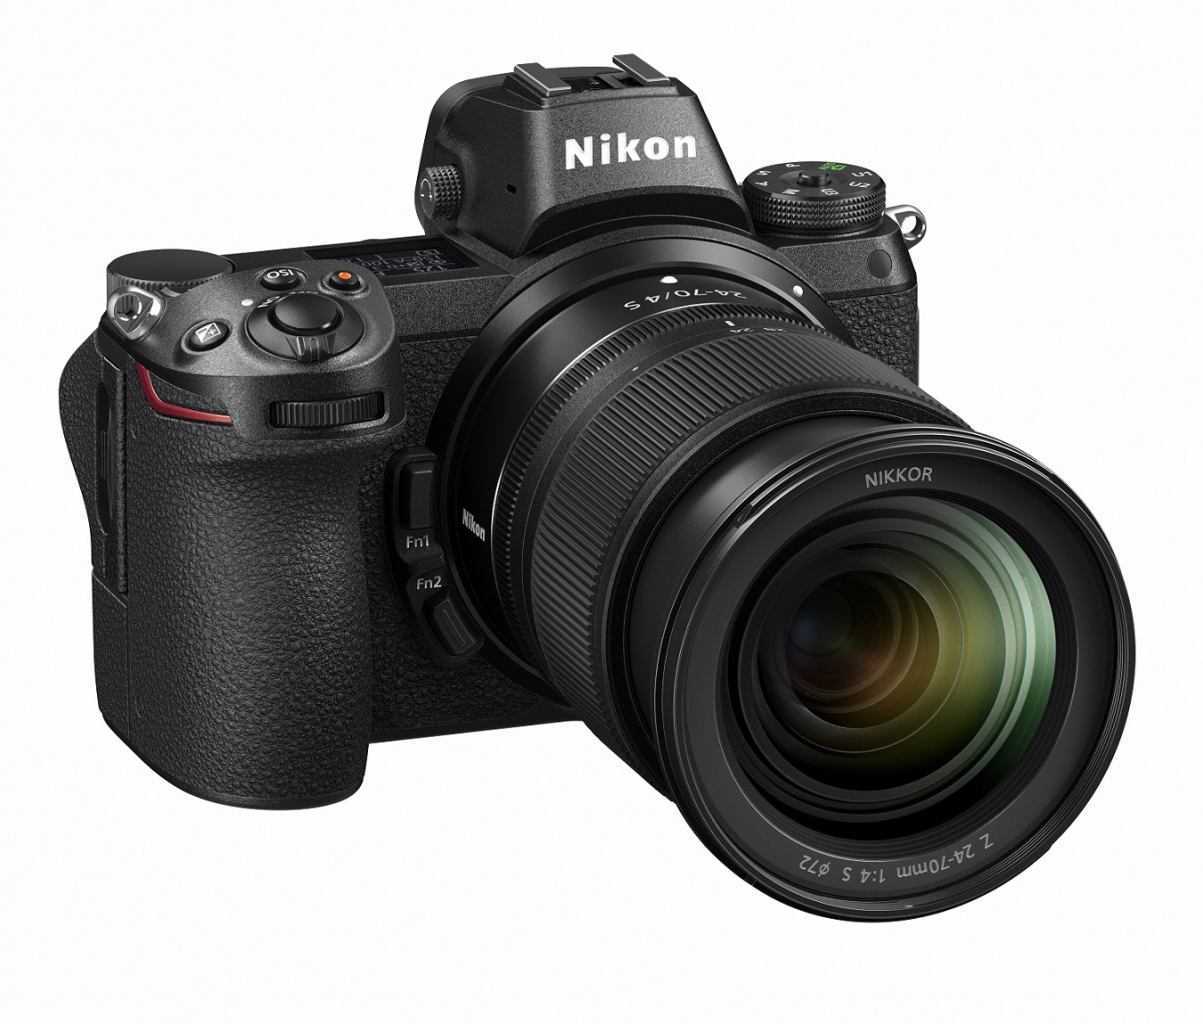 Nikon cosa combini? Impressioni a caldo su Nikon Z6 e Nikon Z7